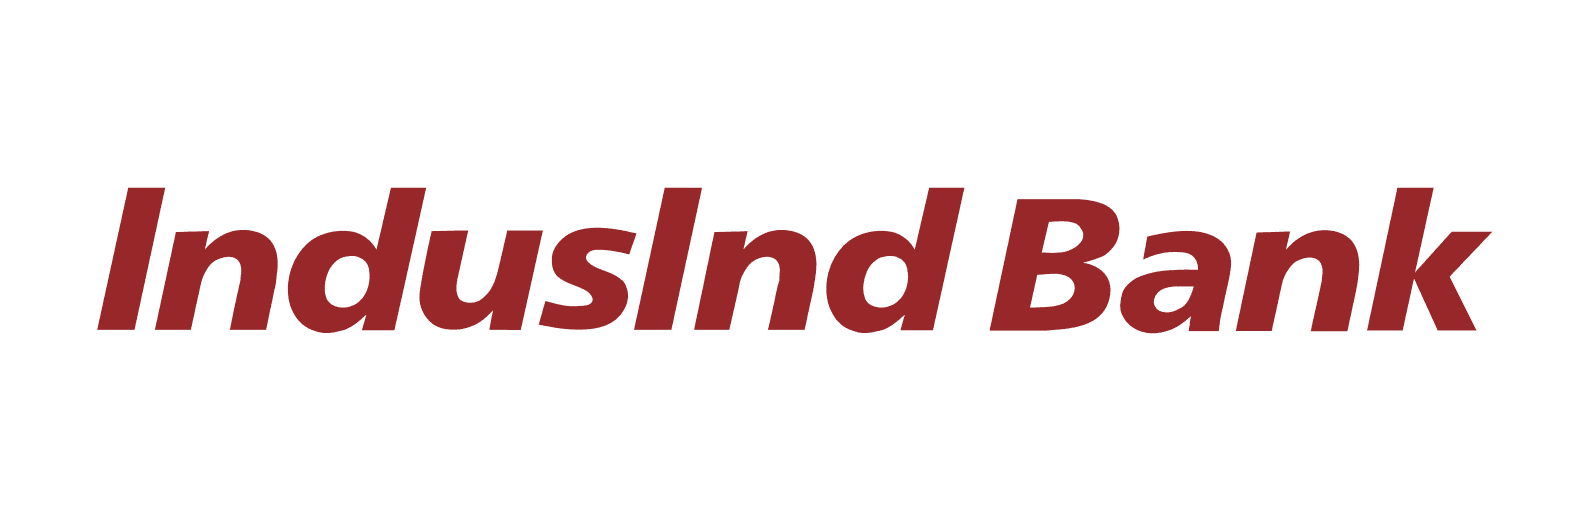 indusland bank